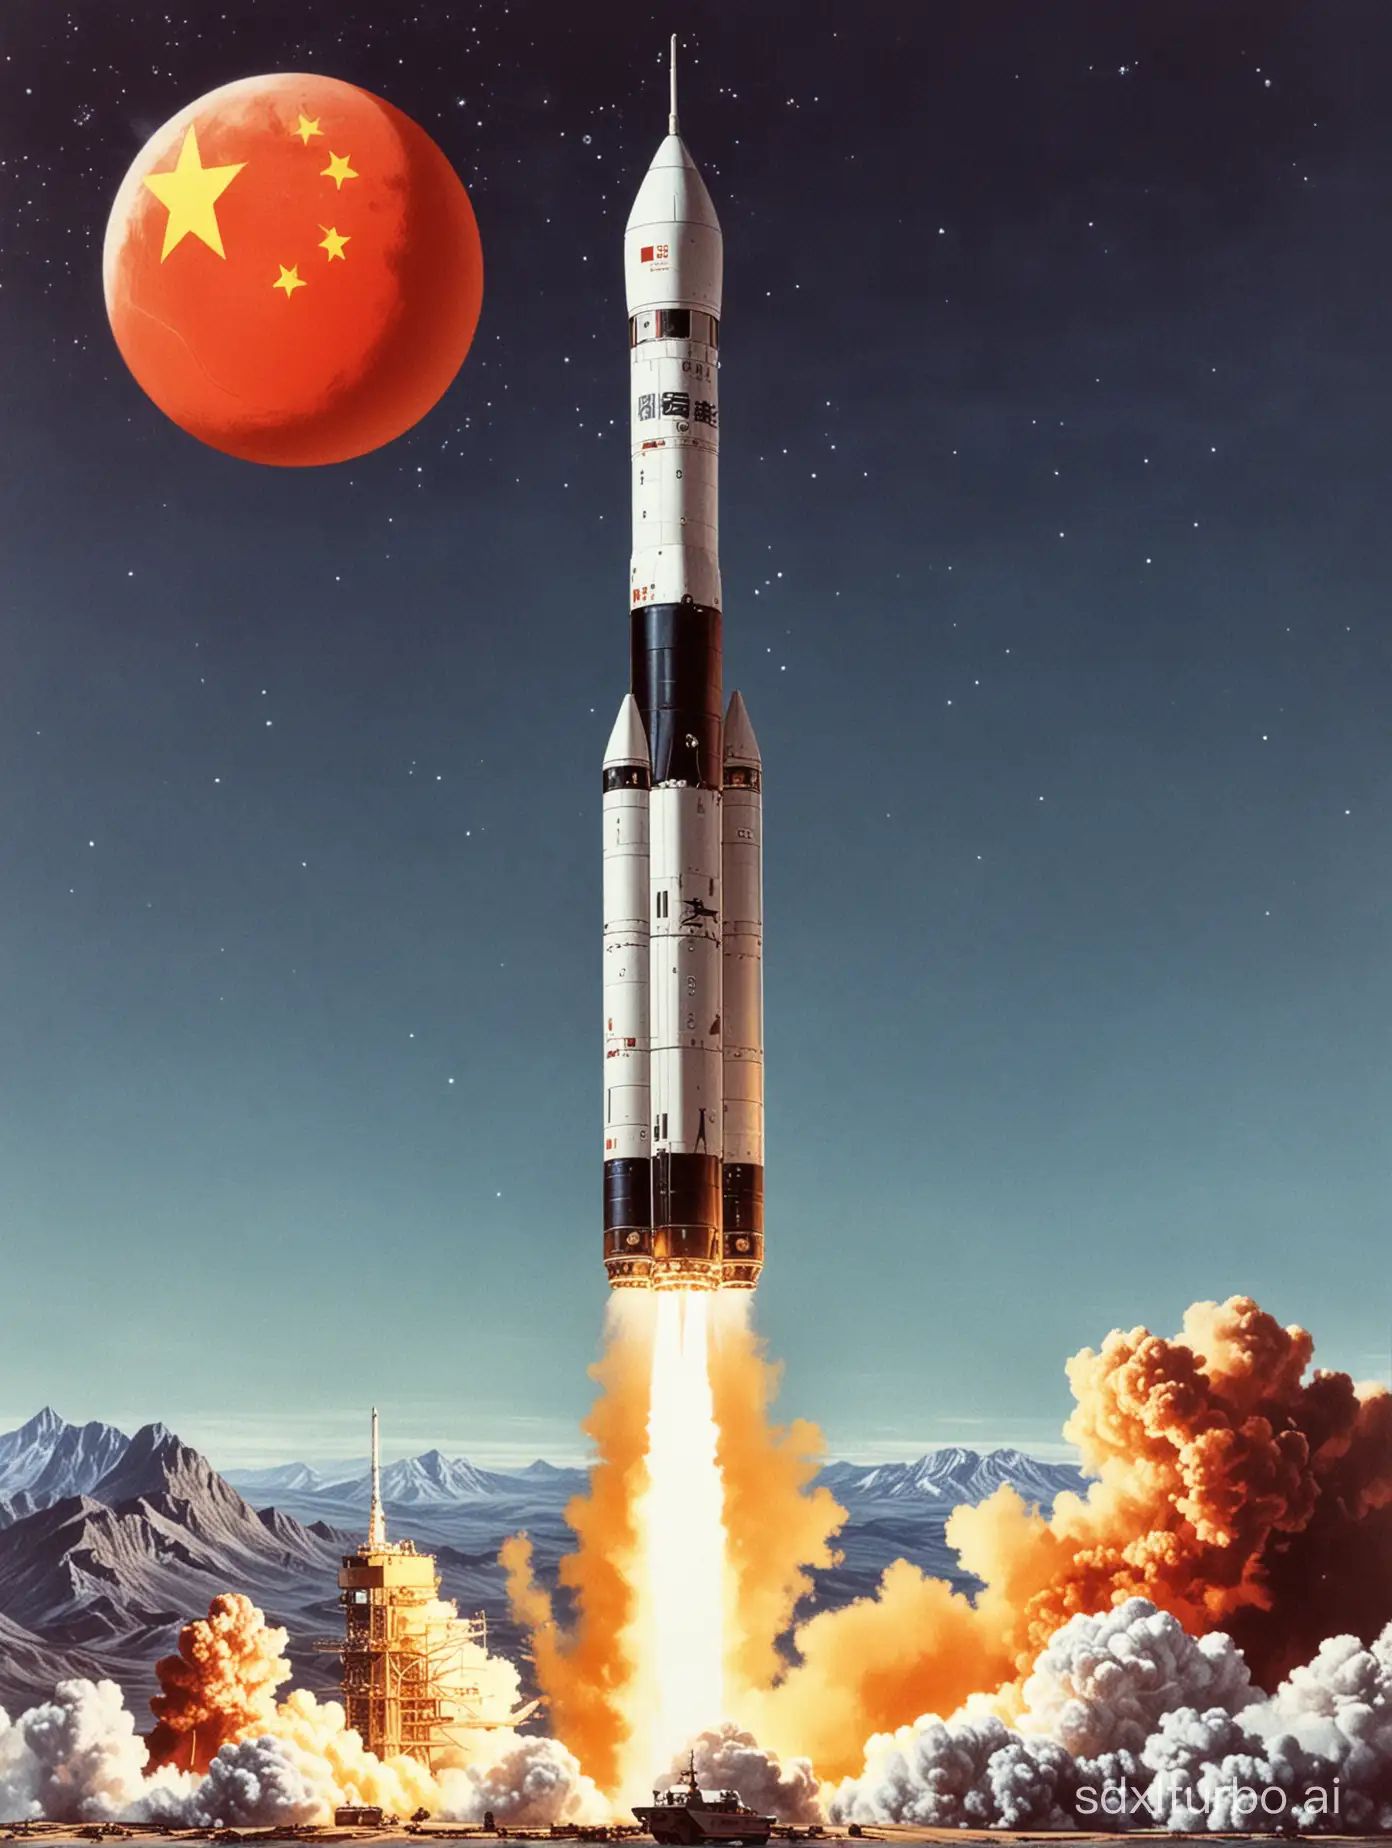 1970年4月24日中国发射的第一颗人造卫星。为“中国航天日”设计一个关于“东方红一号卫星的”的海报